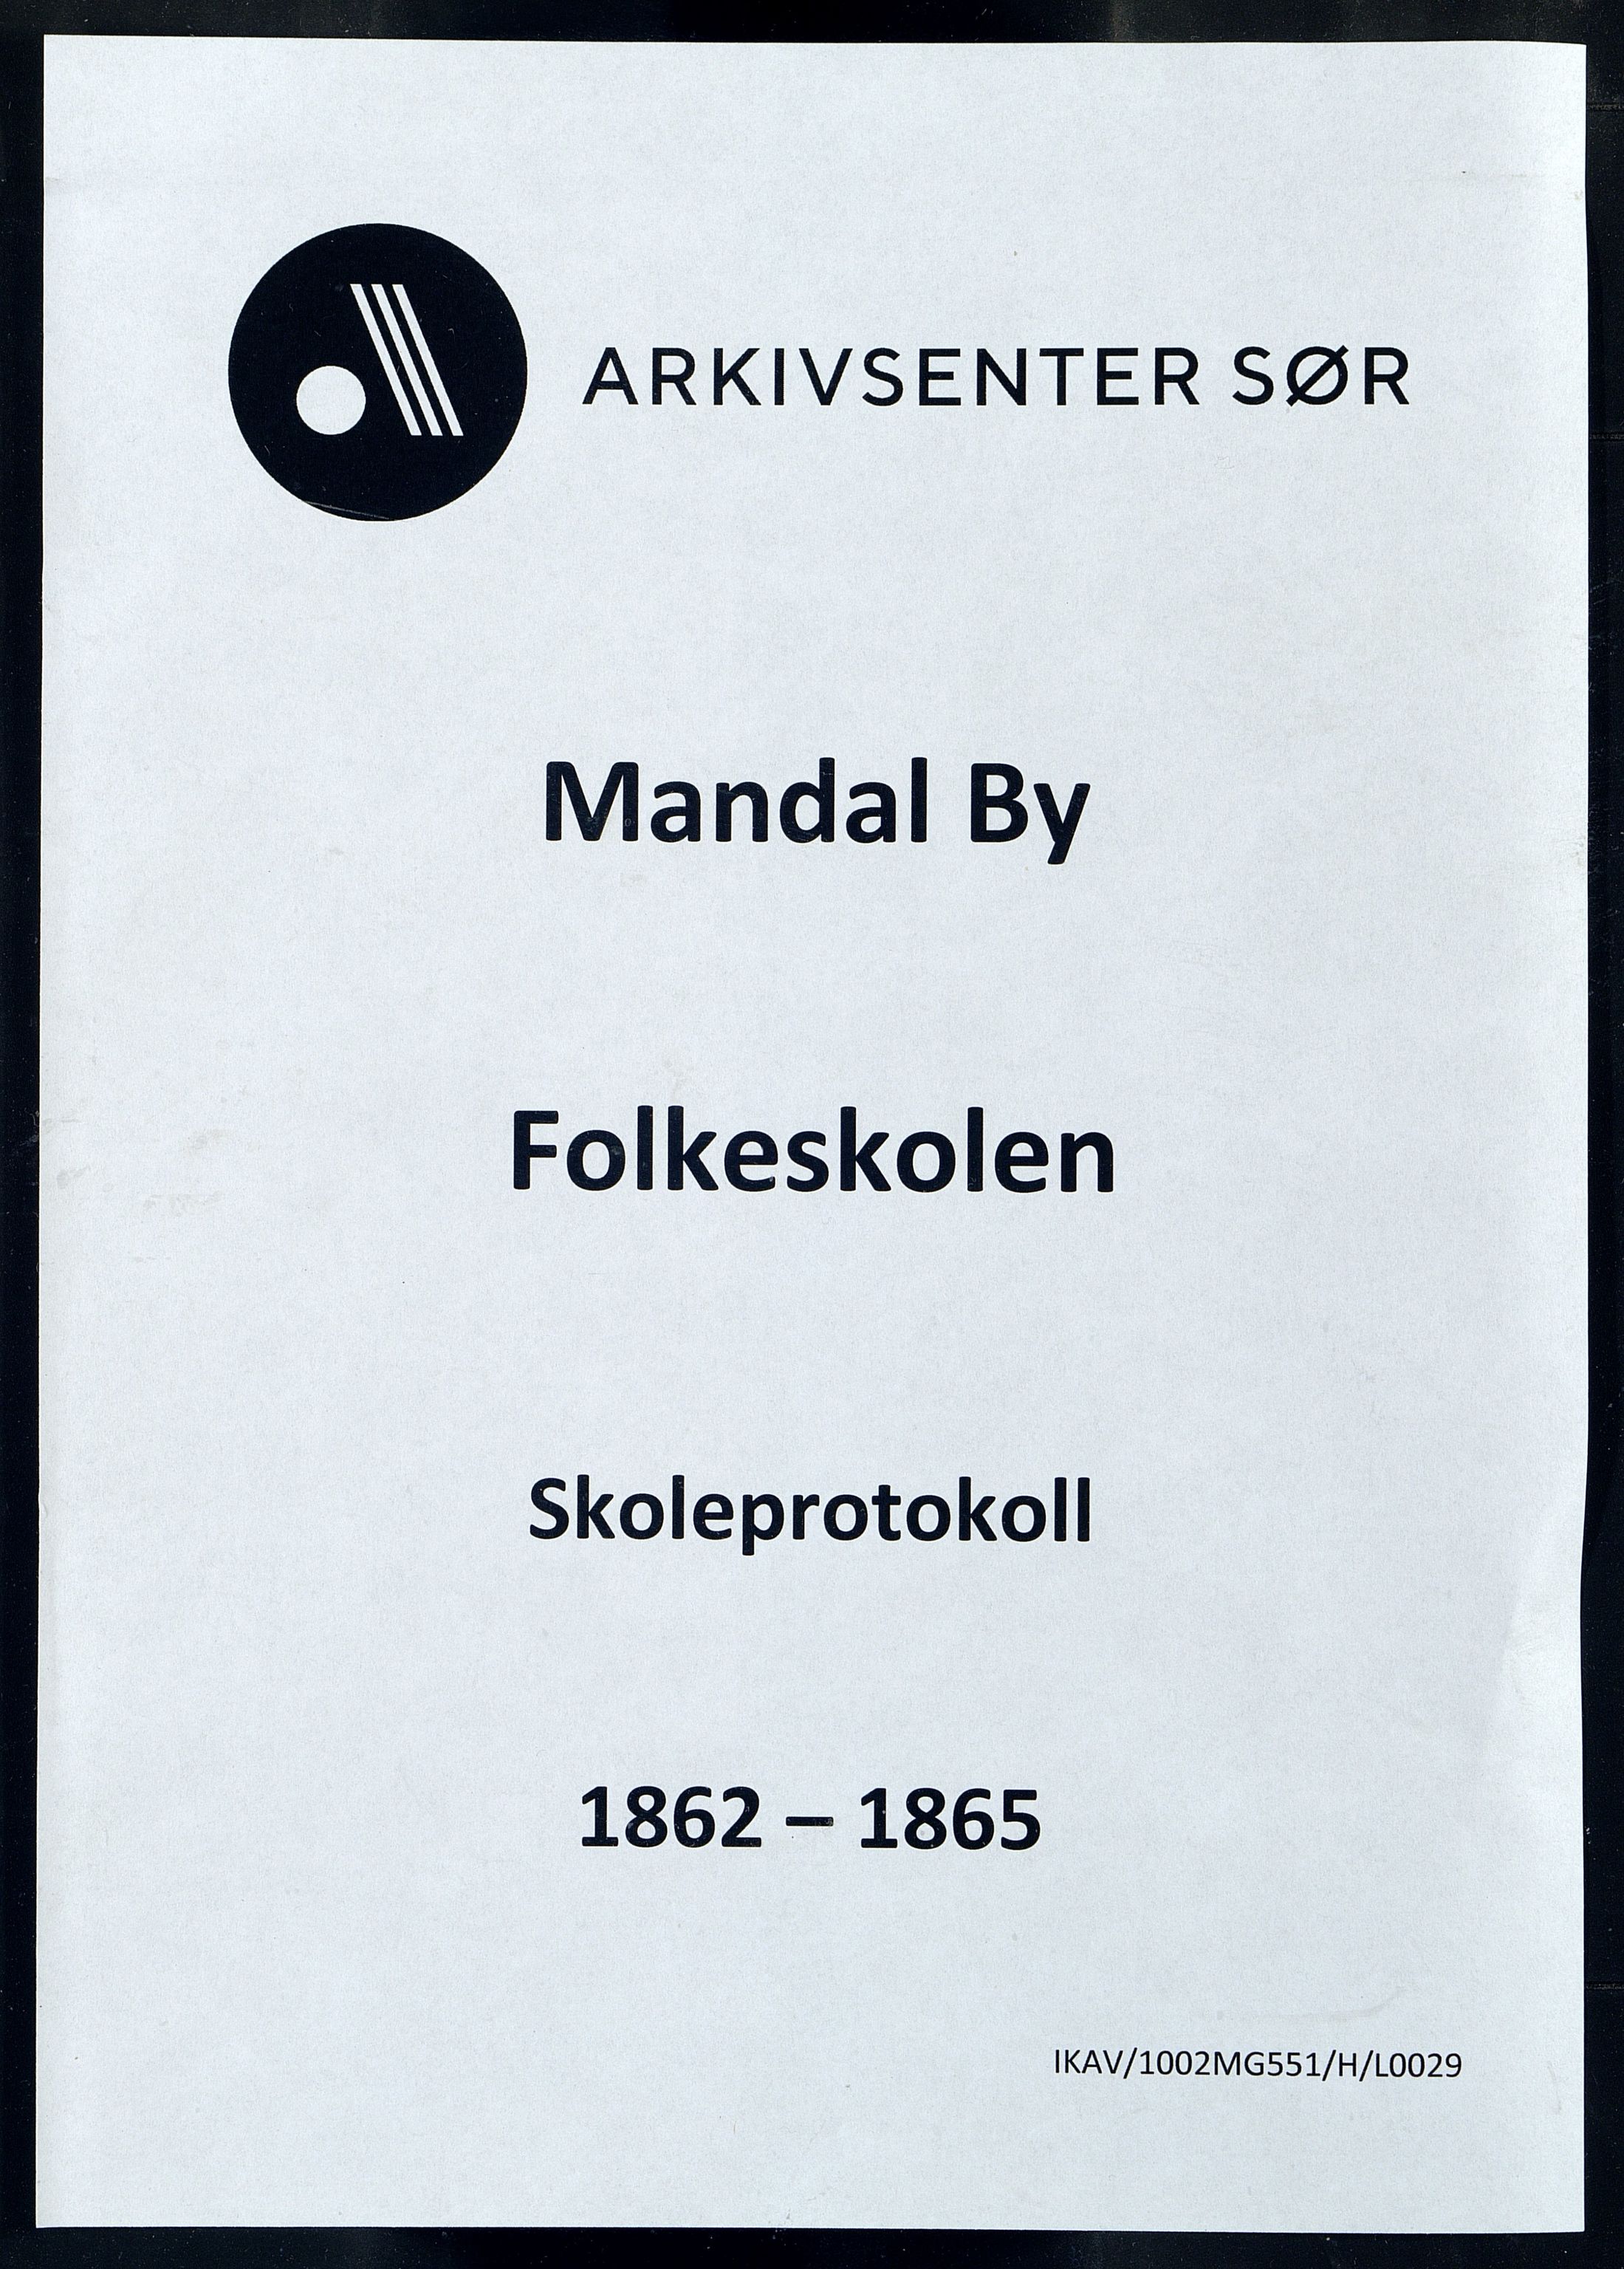 Mandal By - Mandal Allmueskole/Folkeskole/Skole, IKAV/1002MG551/H/L0029: Skoleprotokoll, 1862-1865